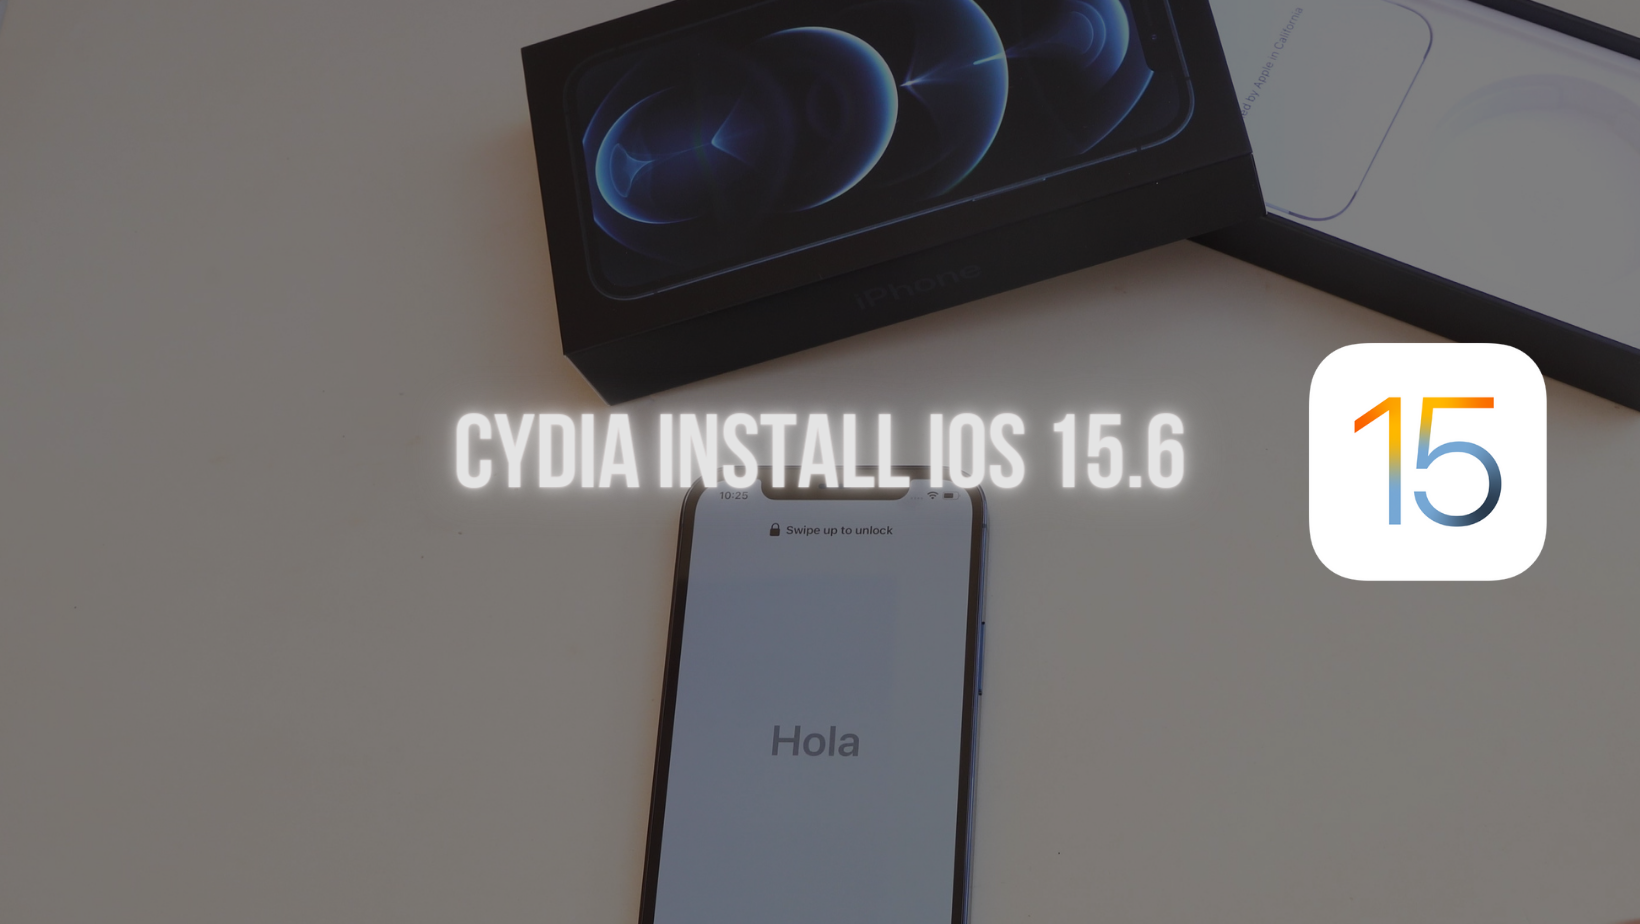 cydia ios 15.6 download